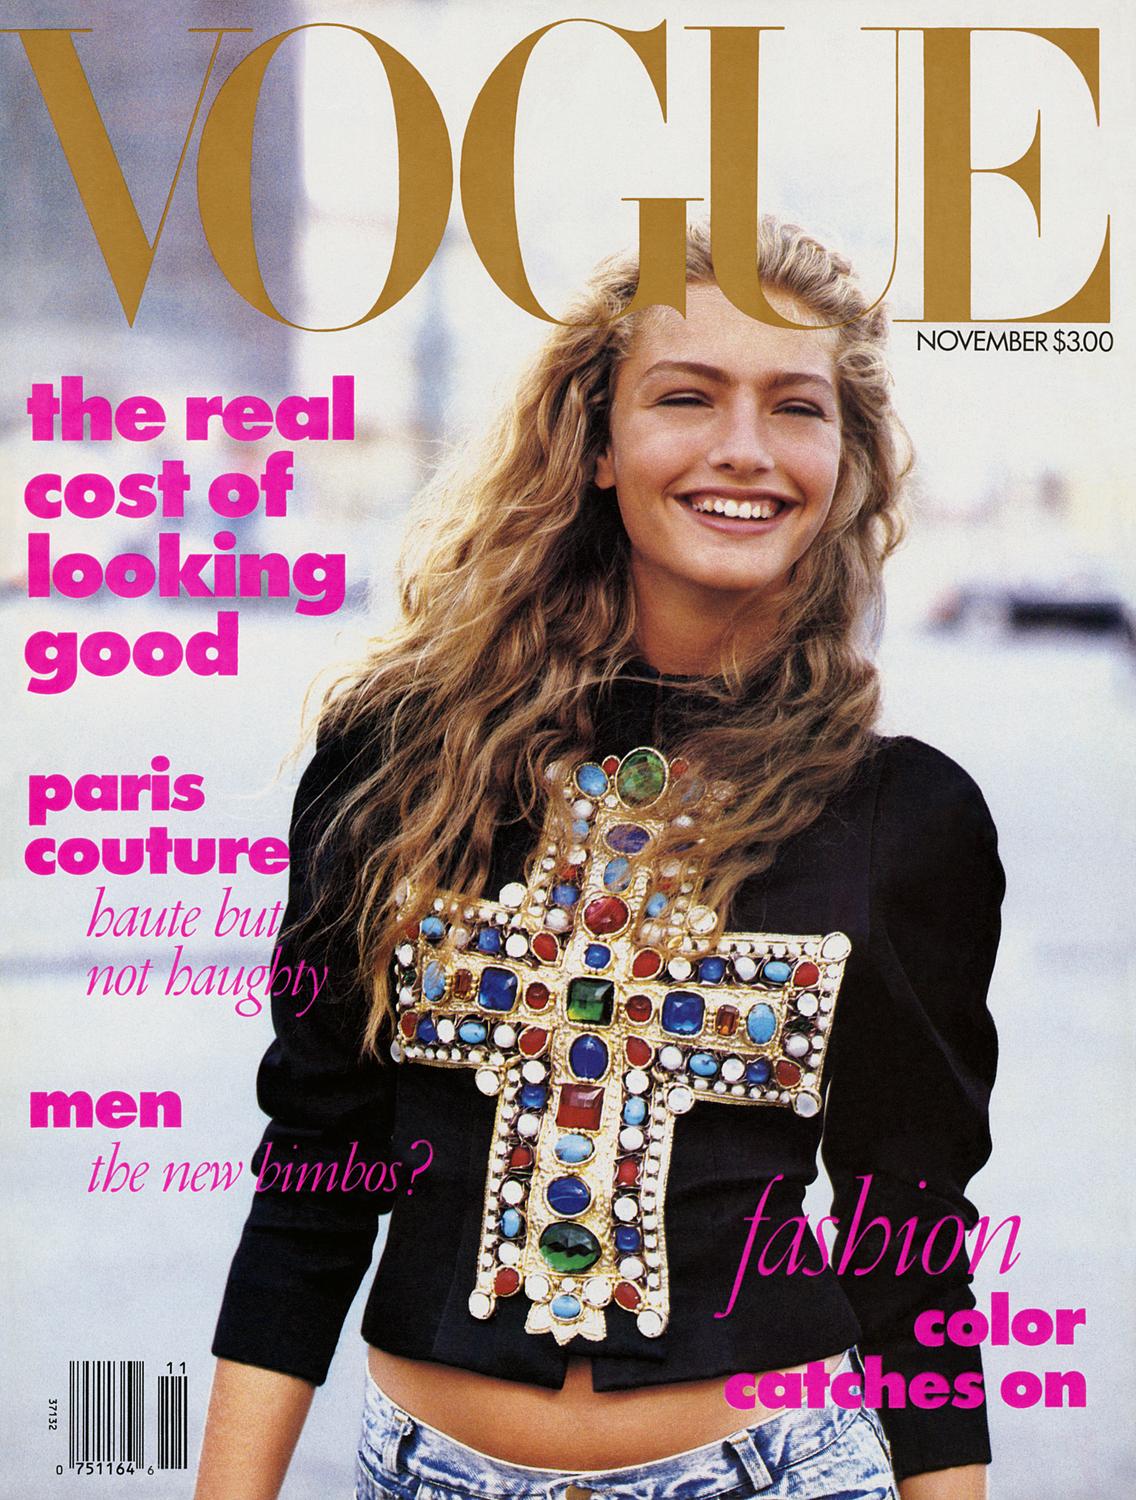 Анне Винтур — 73! Вспоминаем главные цитаты легендарного главреда американского Vogue